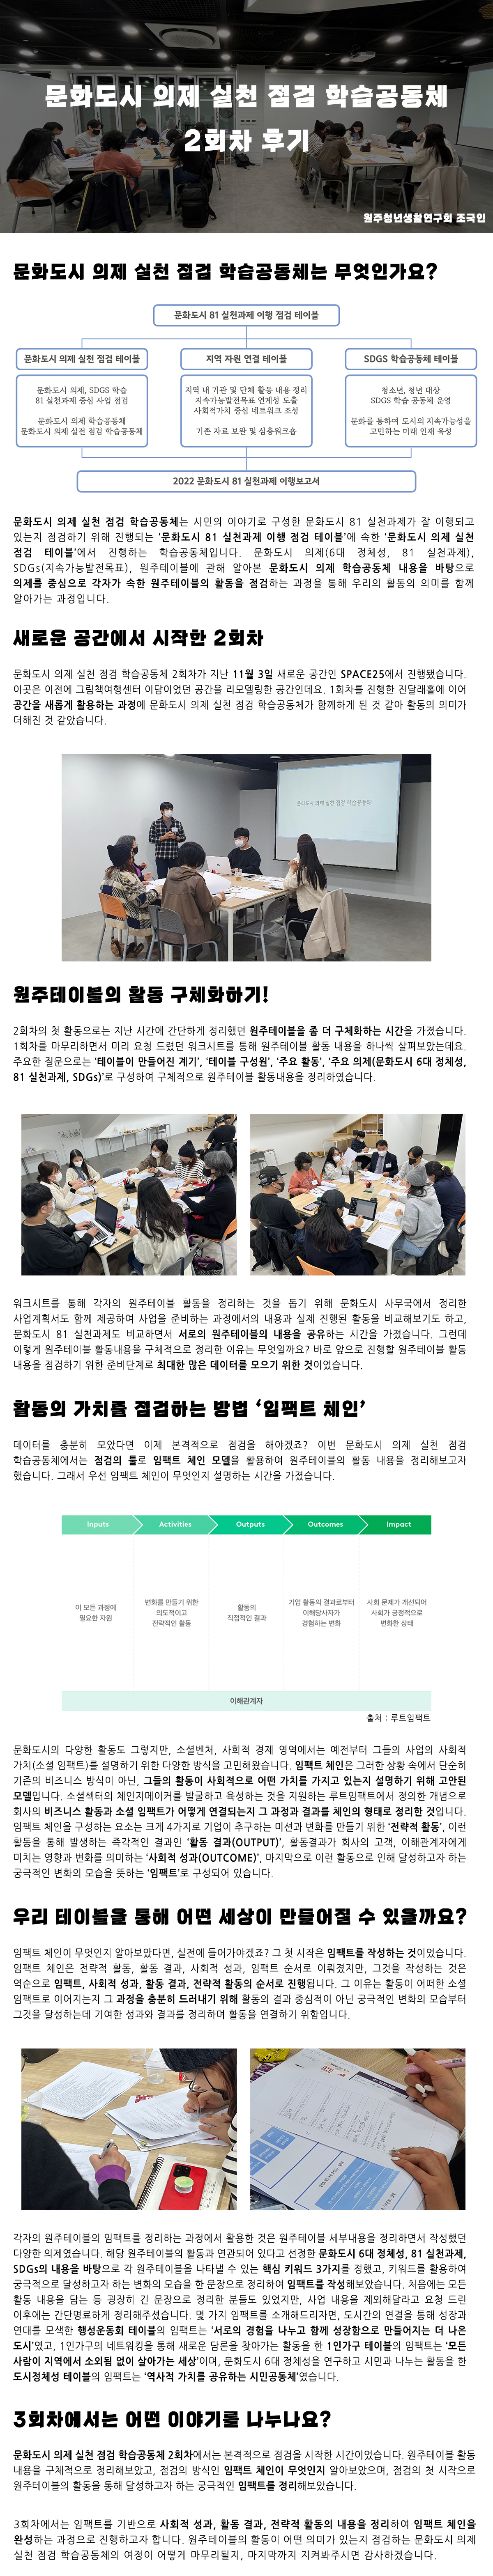 문화도시 의제 실천 점검 학습공동체 2회차 후기